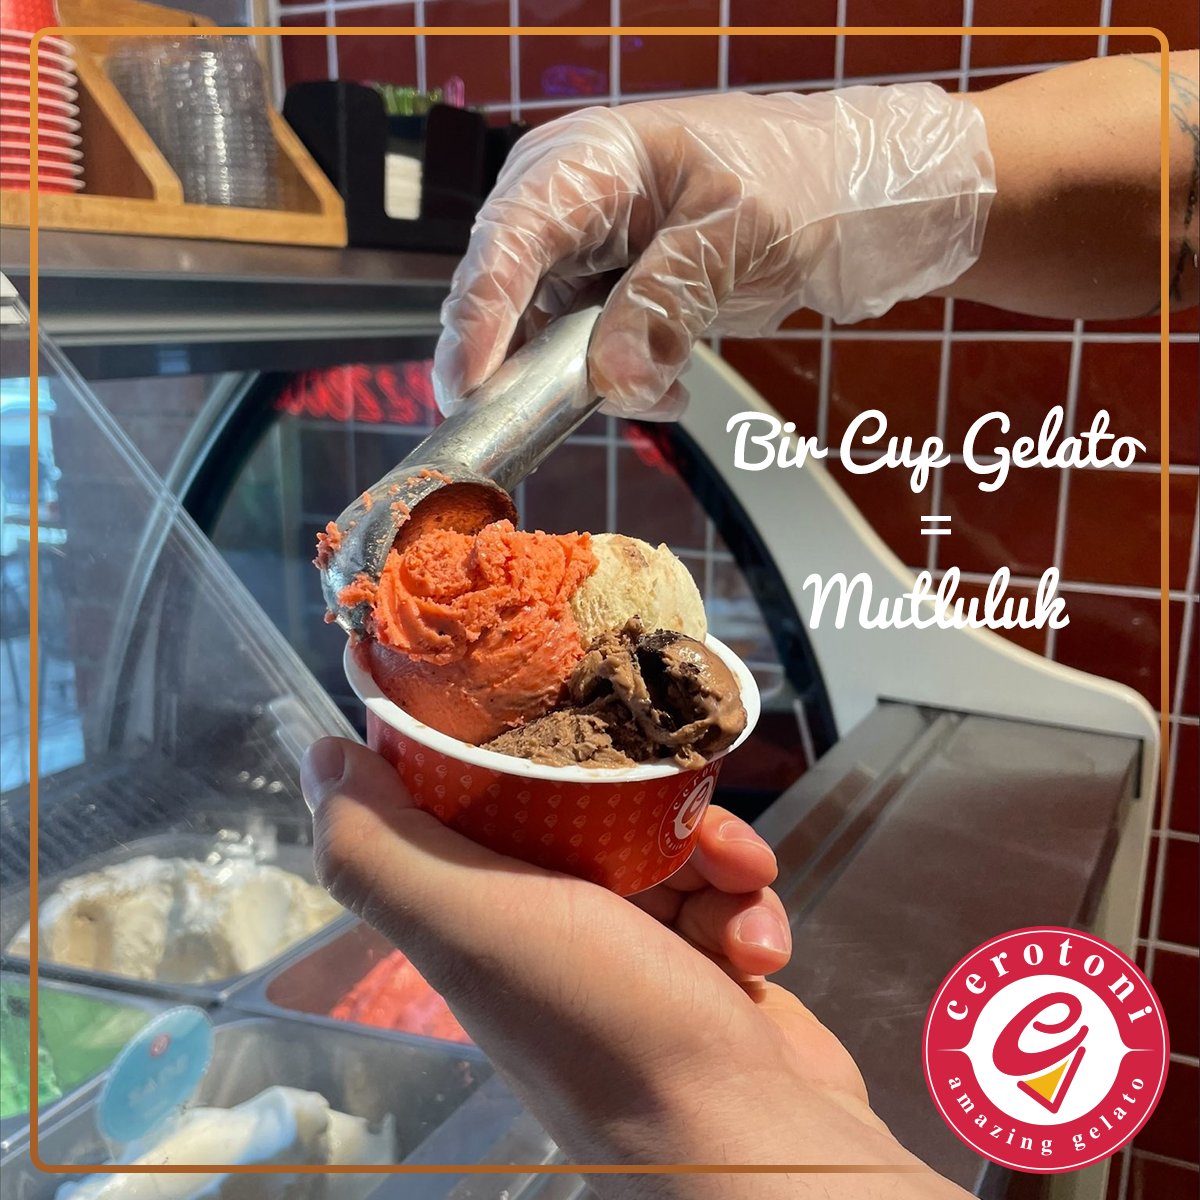 Bu sıcak havalarda size en iyi gelecek şey bir kup gelato! 🍨

#cerotoni #cerotonigelato #dondurma #gelato #italyandondurması #nazilli #kuşadası #buca #bostanlı #italya #roma #dondurmakeyfi